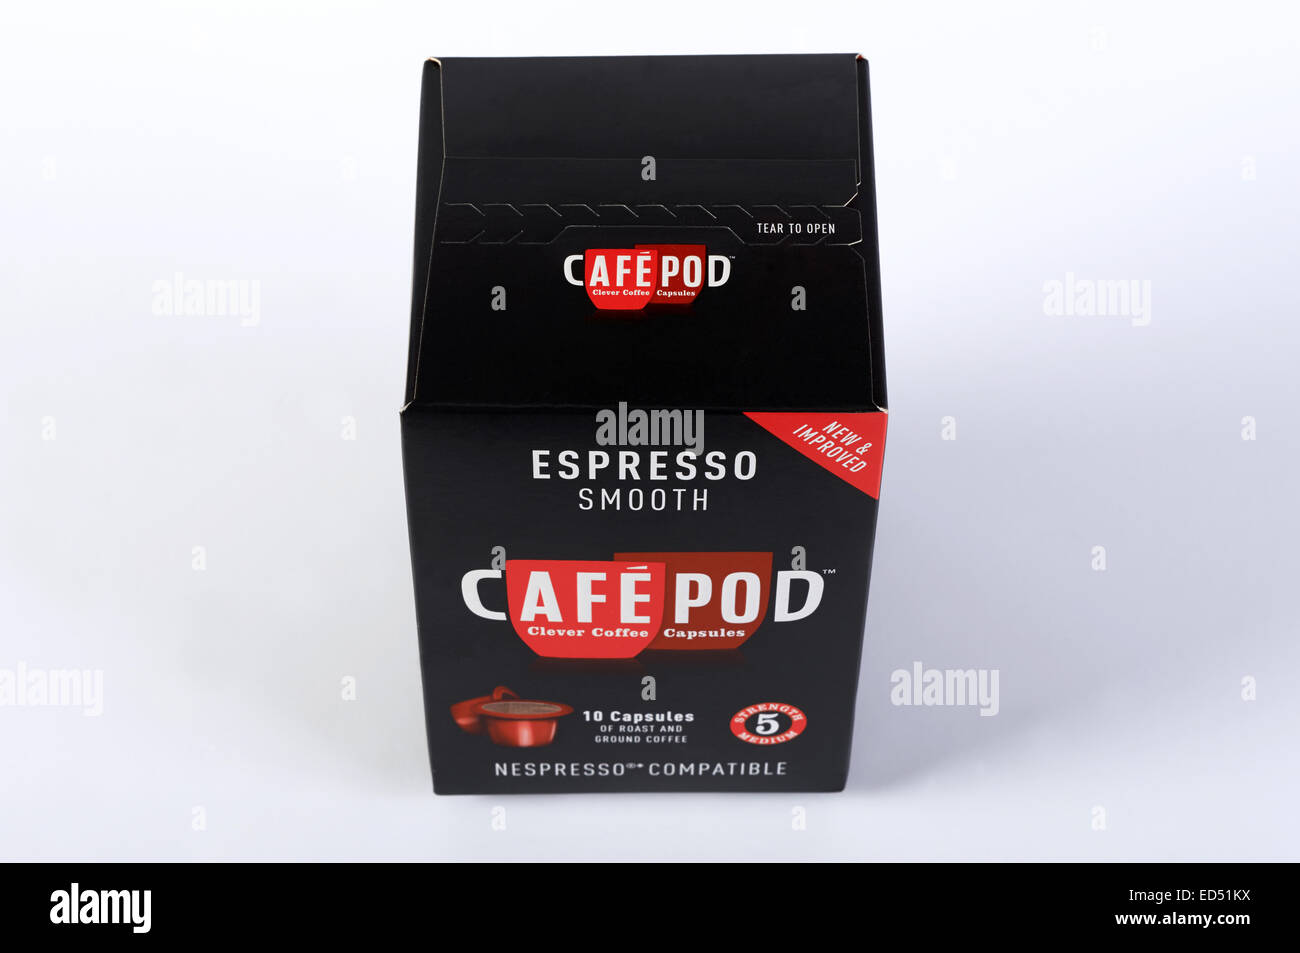 Espresso glatt Cafe Pod Nespresso kompatible Kaffee pods Stockfoto